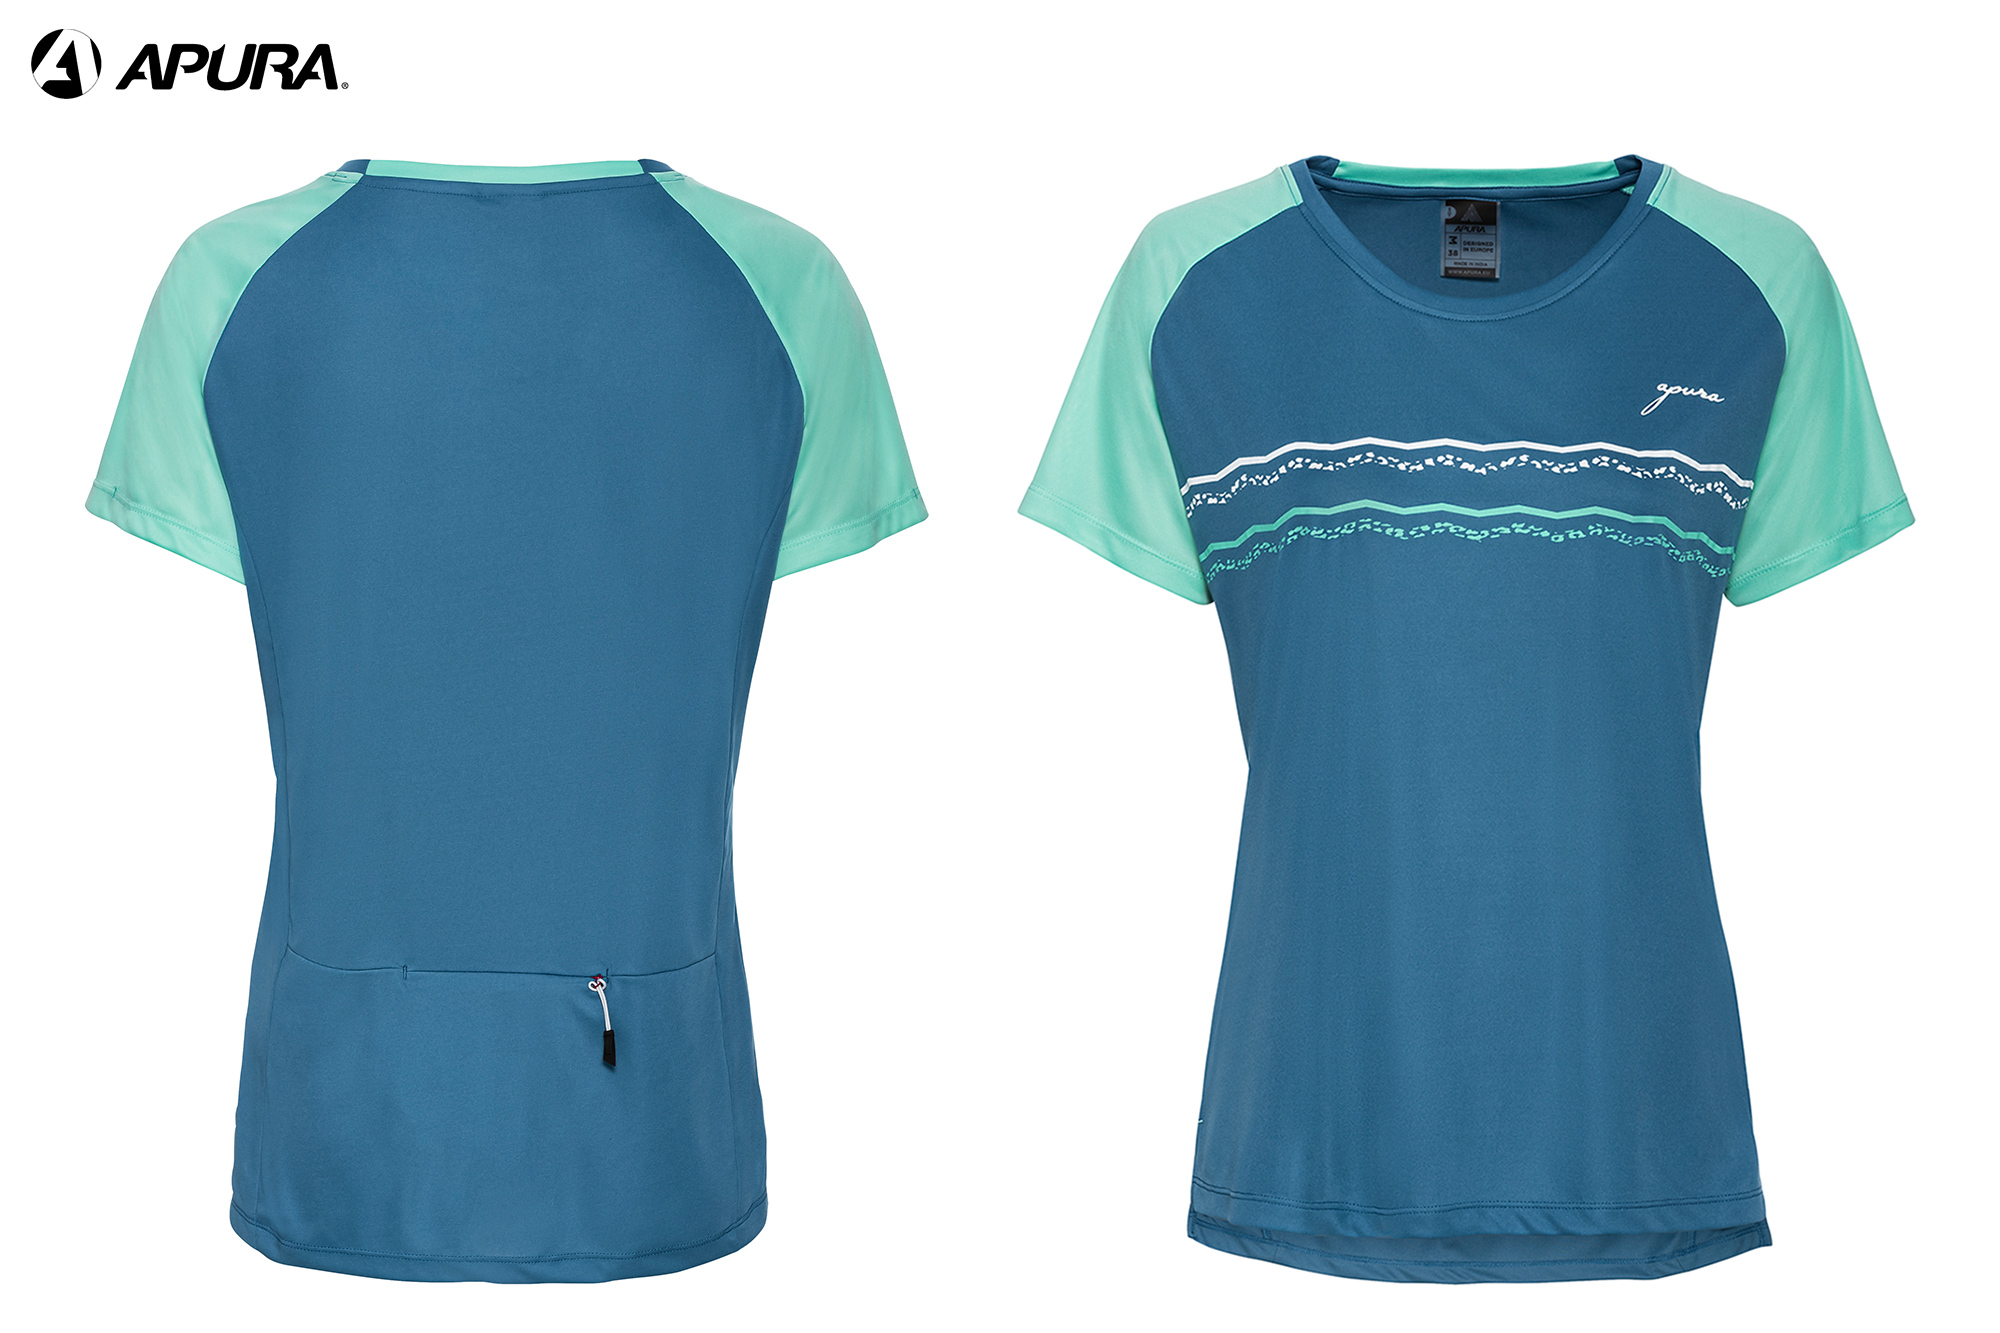 APURA Idia 3.0 - Shirt Damen - blau / mint